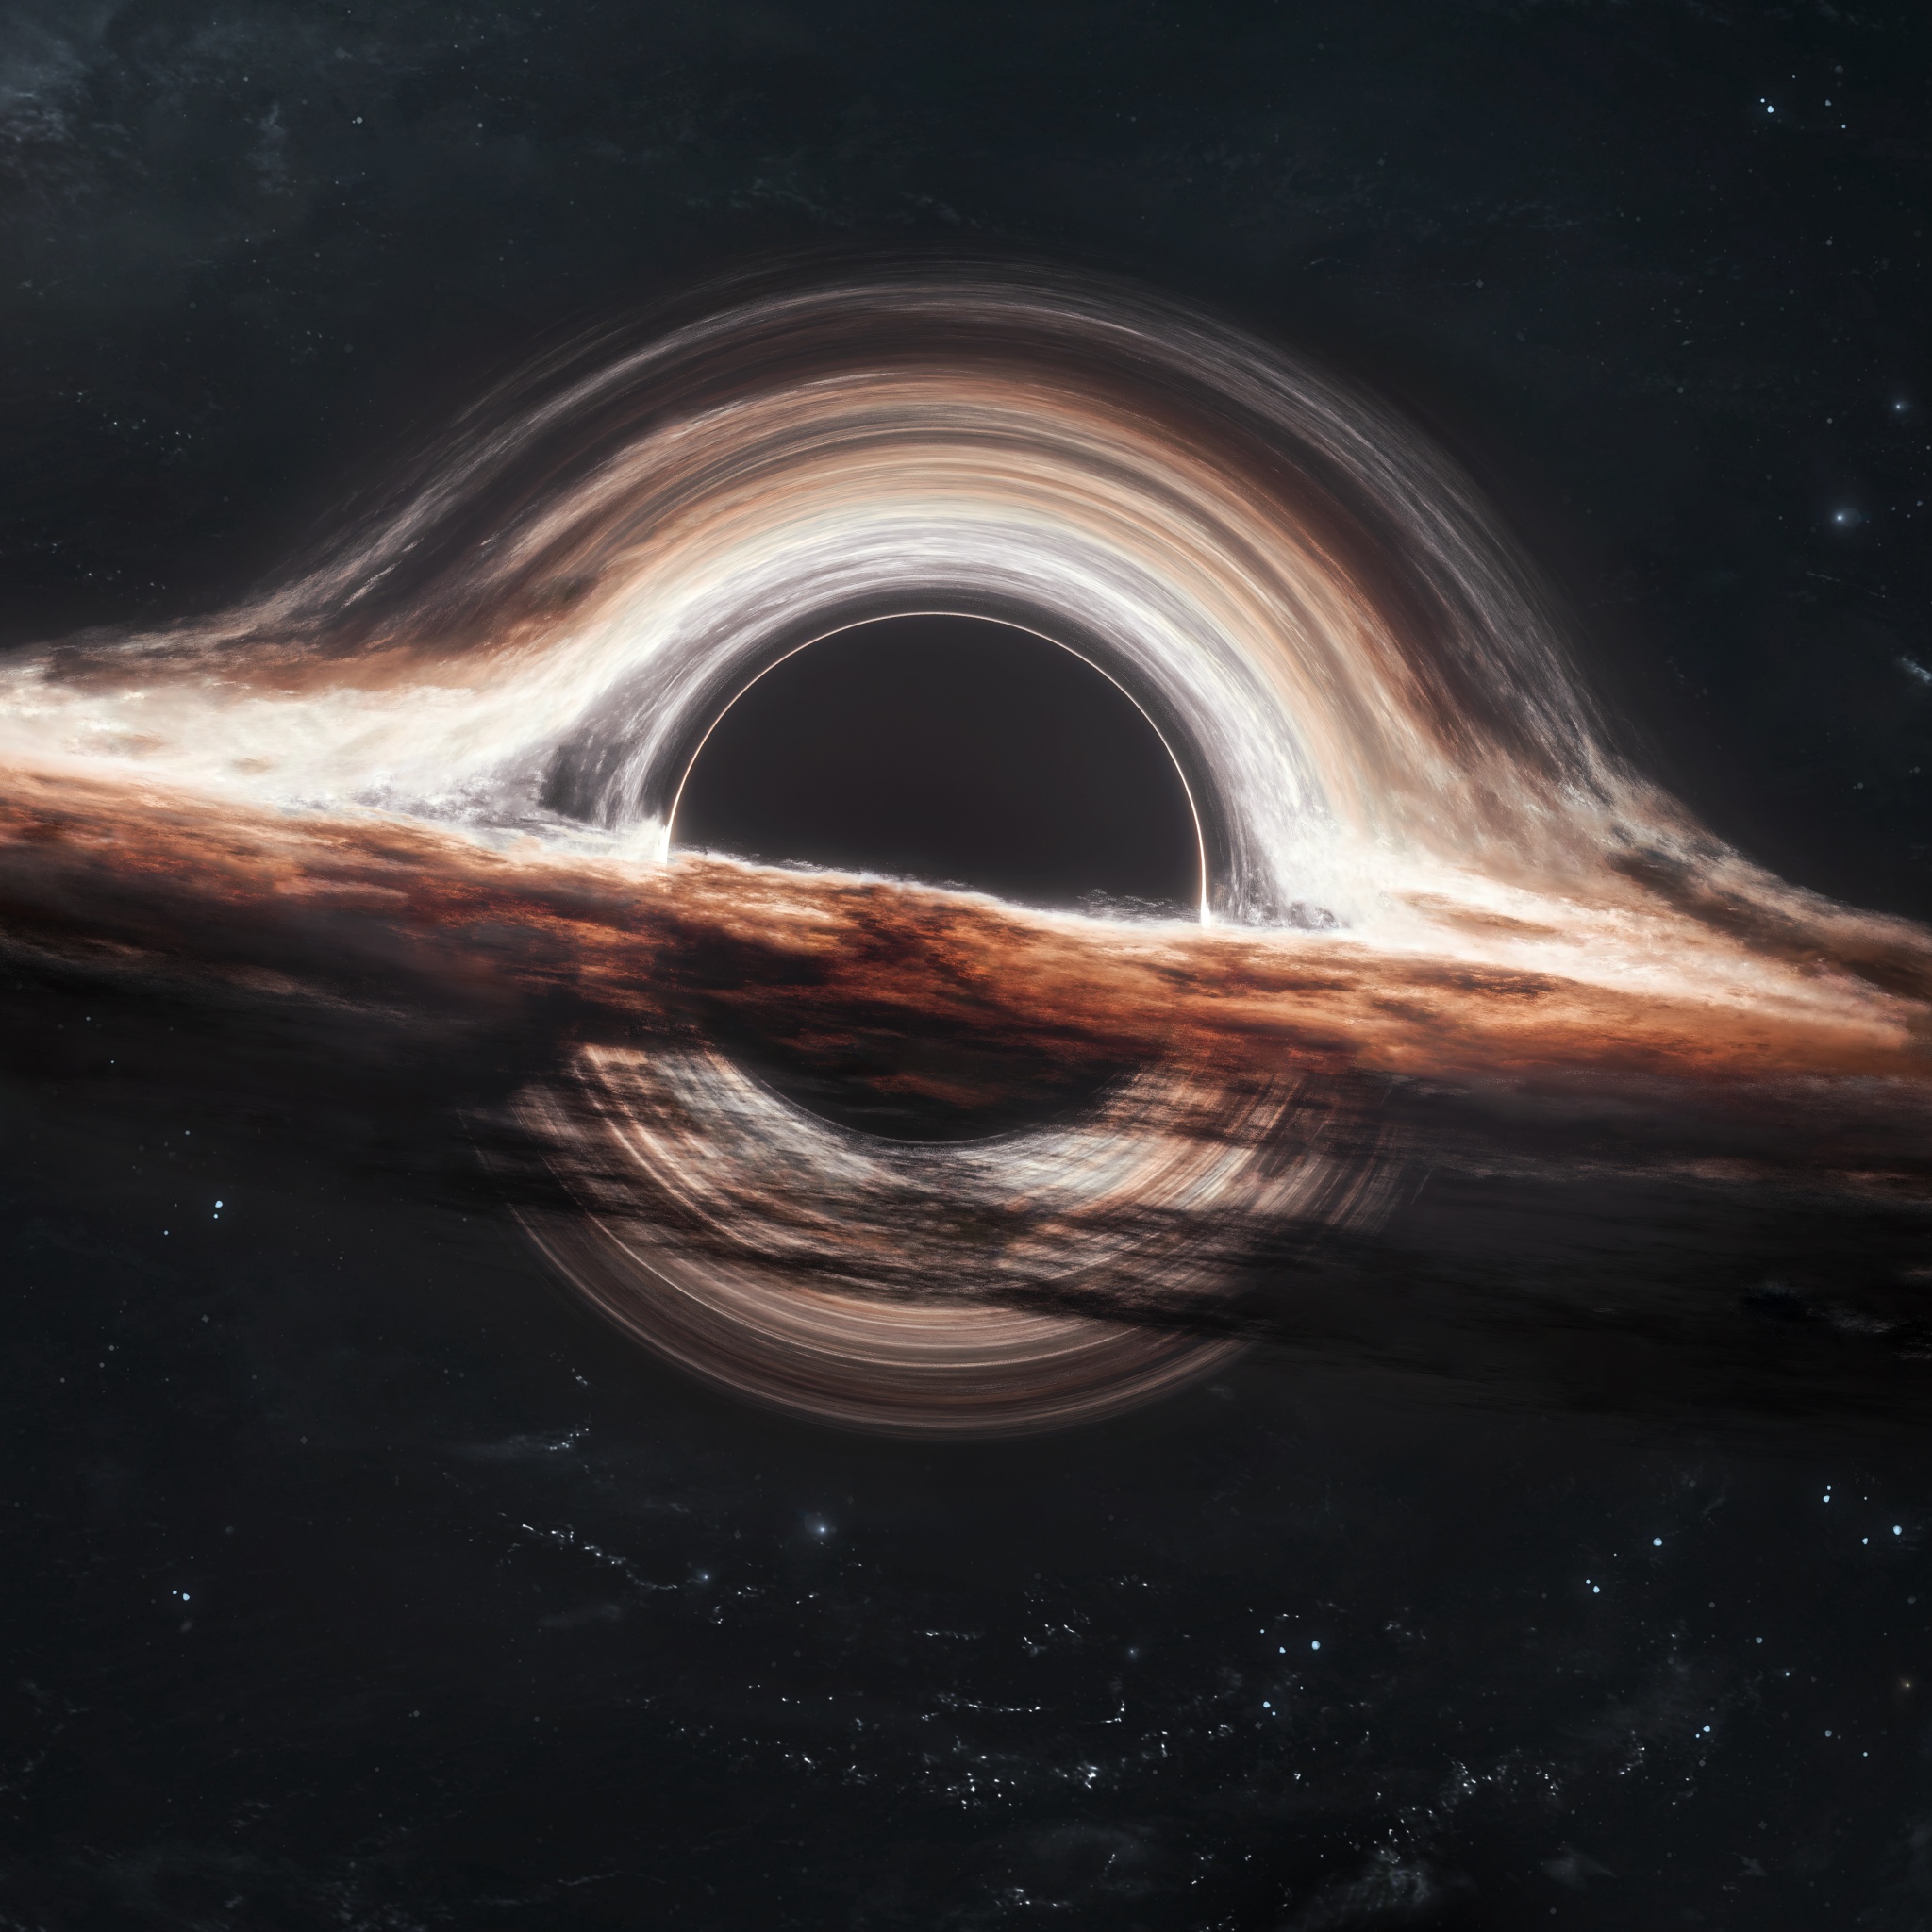 Interstellar Wormhole - 12 Hours - 4K Ultra HD - YouTube